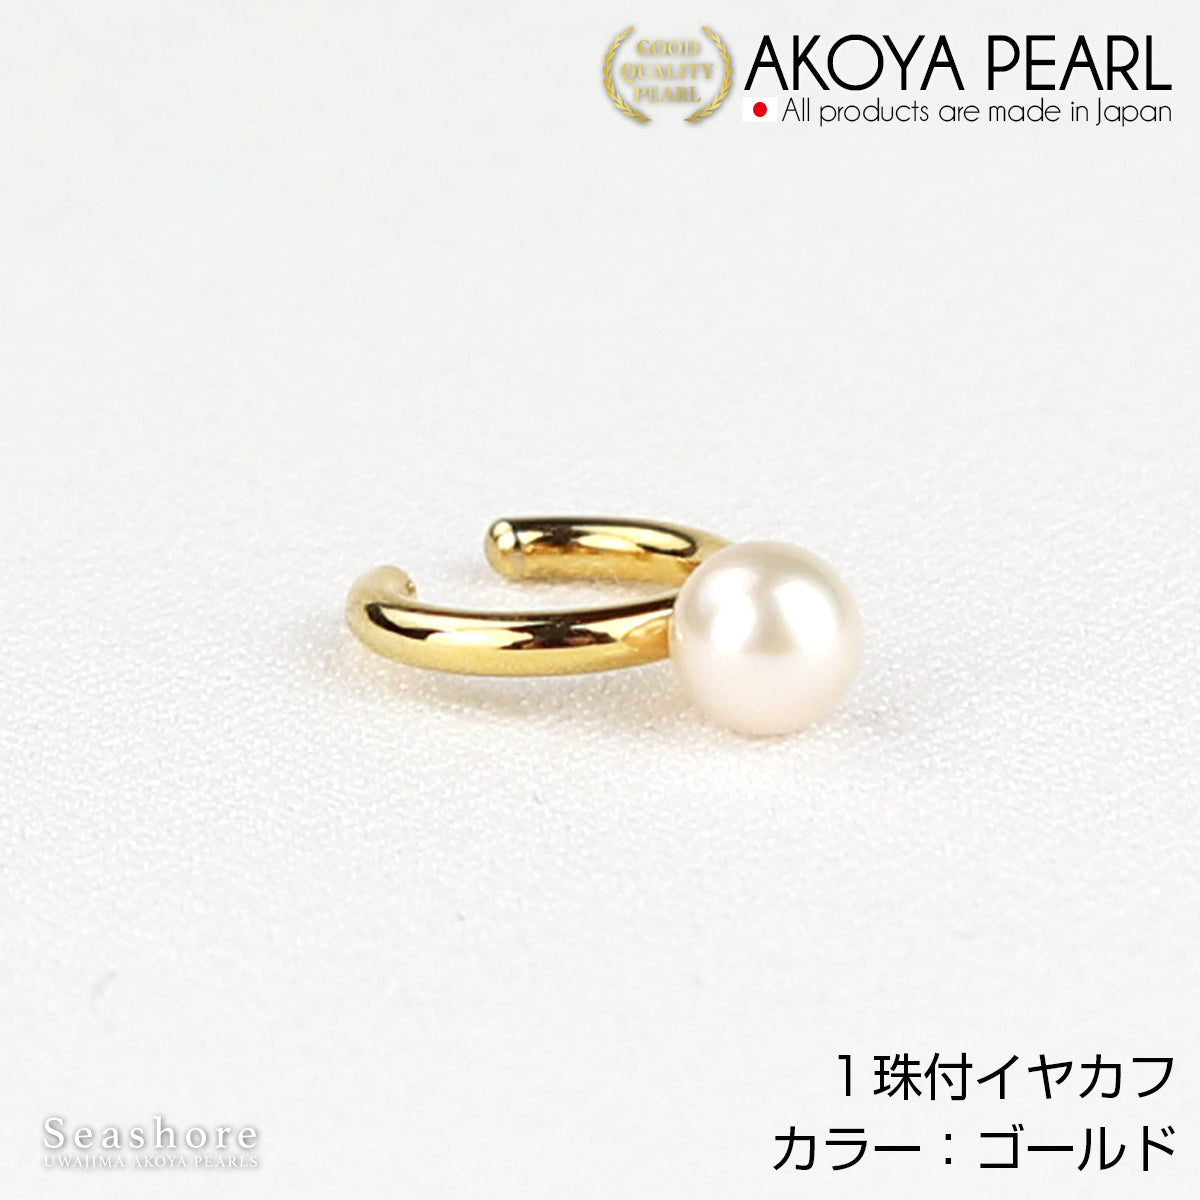 1 个 Akoya 珍珠一只耳朵耳夹 [5.5-6.0mm] [3 种颜色] 黄铜铑/粉金/金色